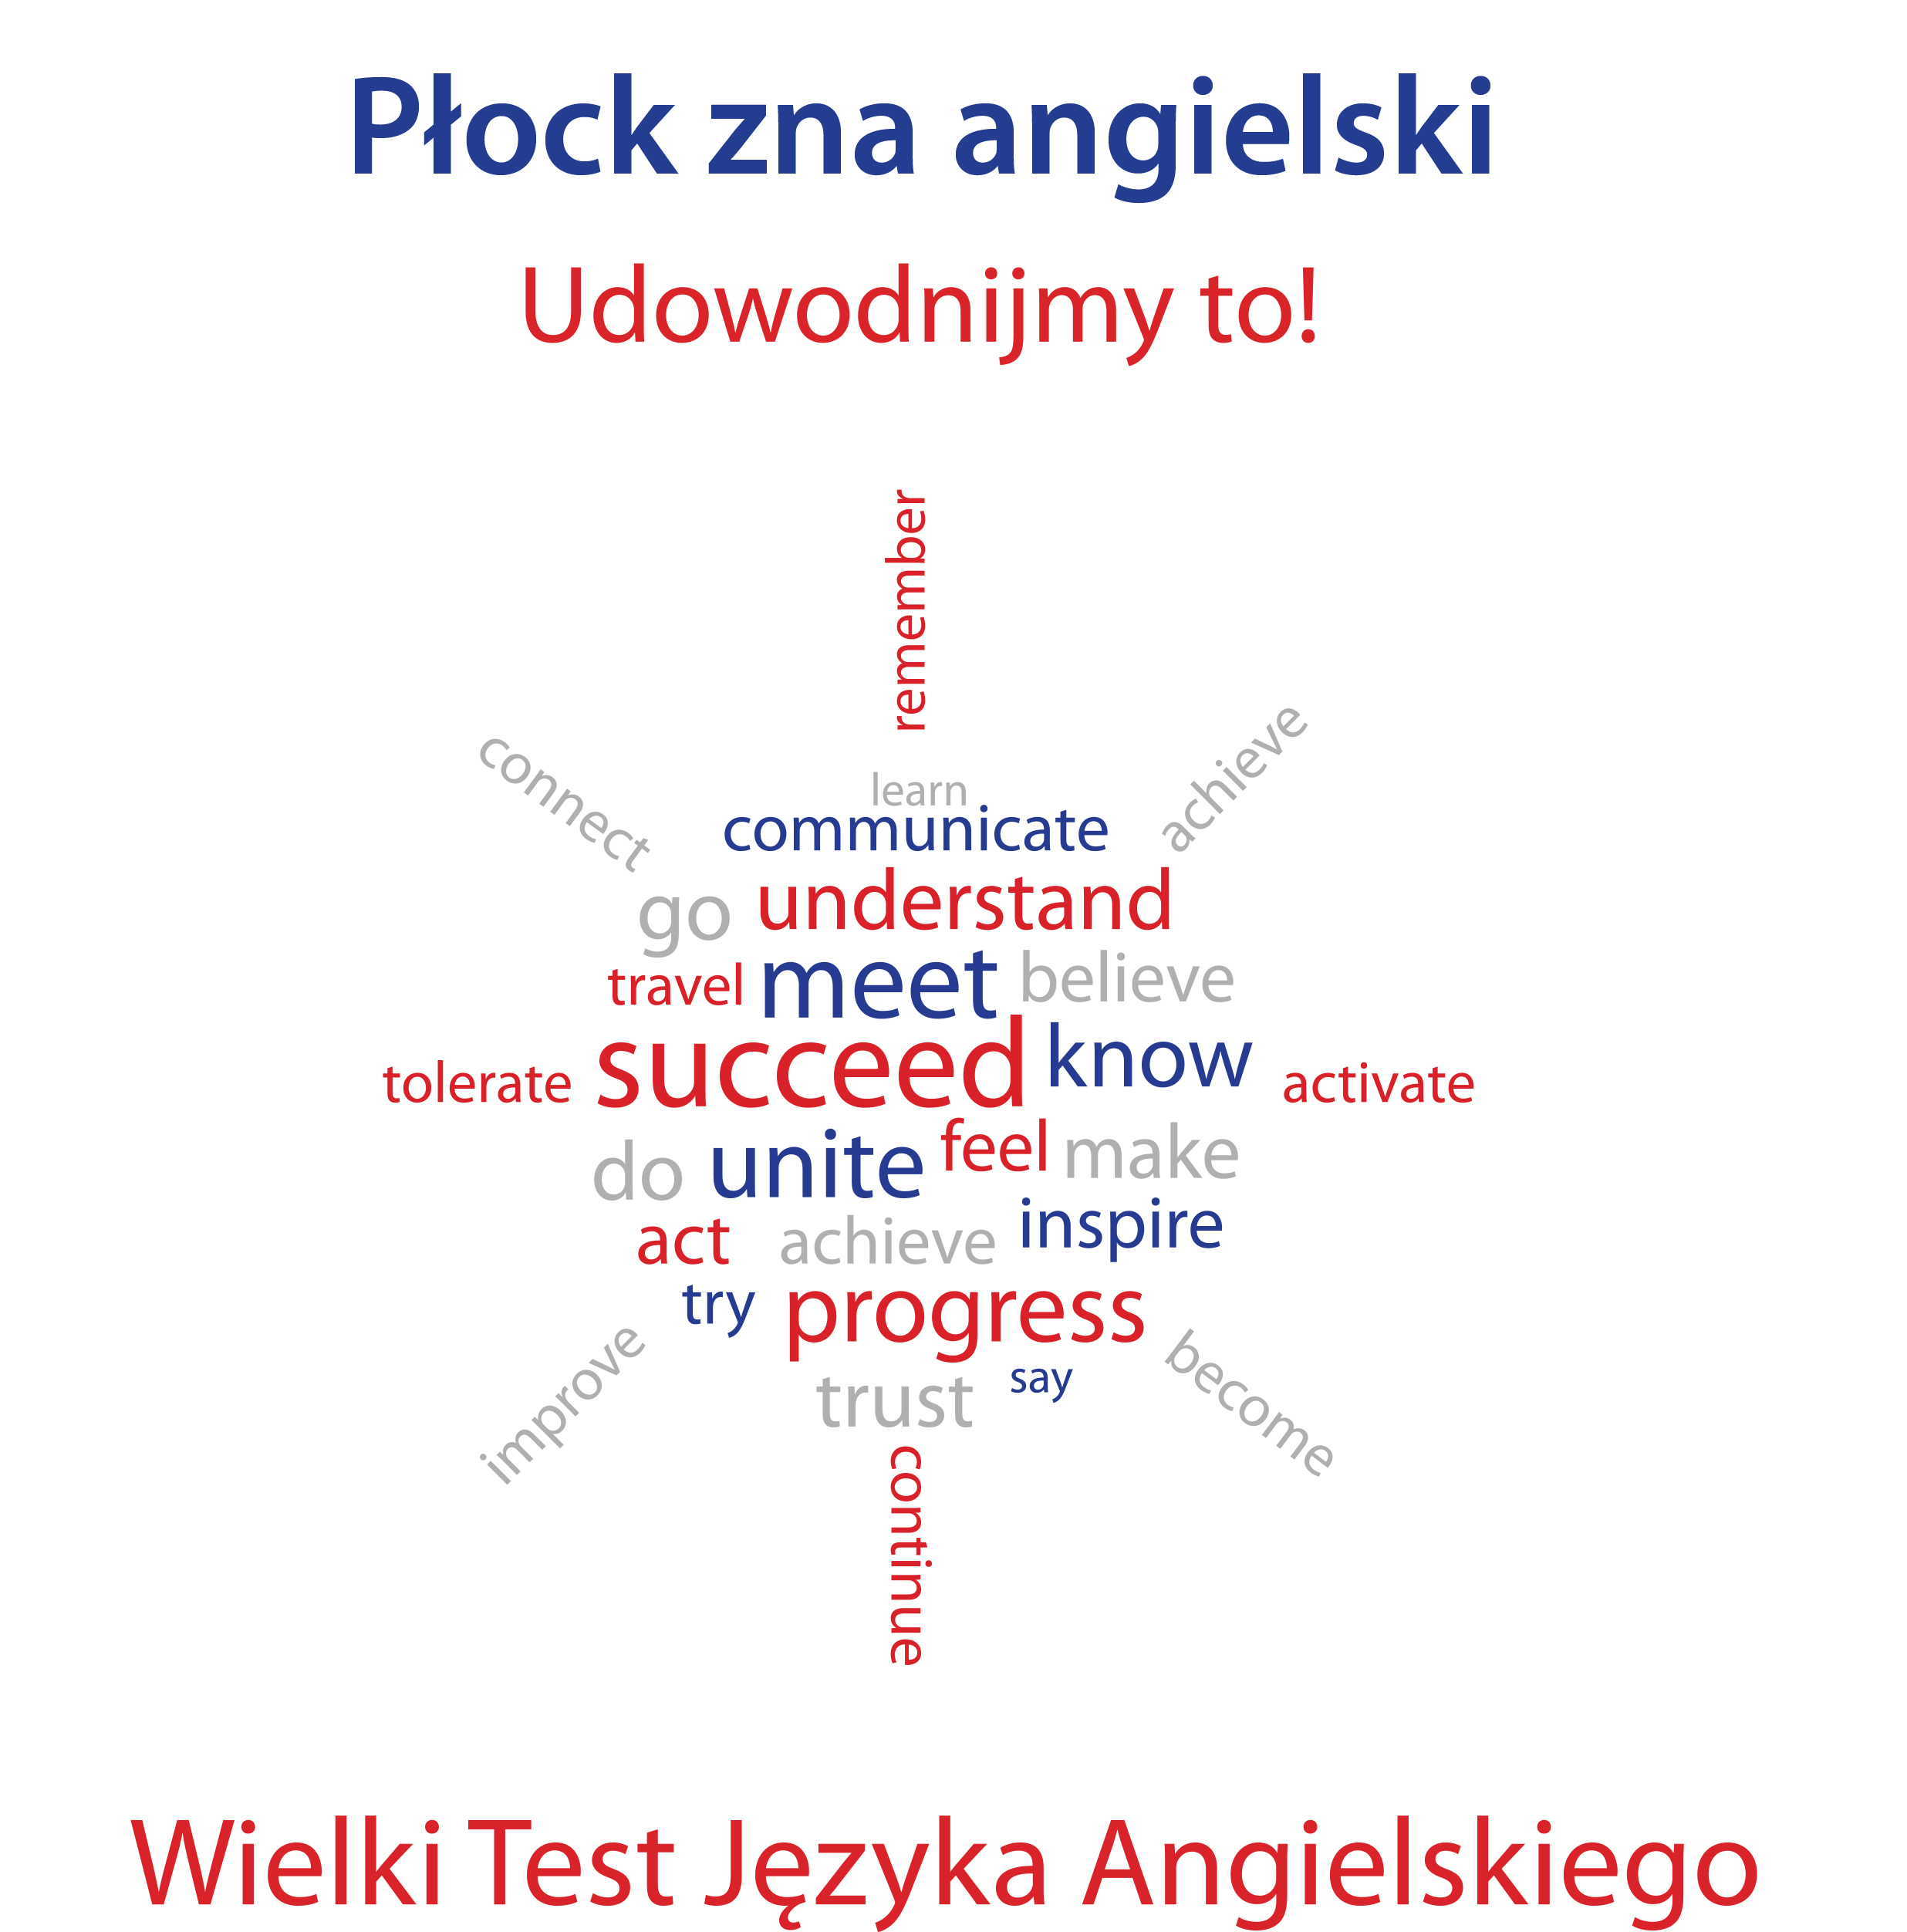 logo_wielki_test_płock.jpg